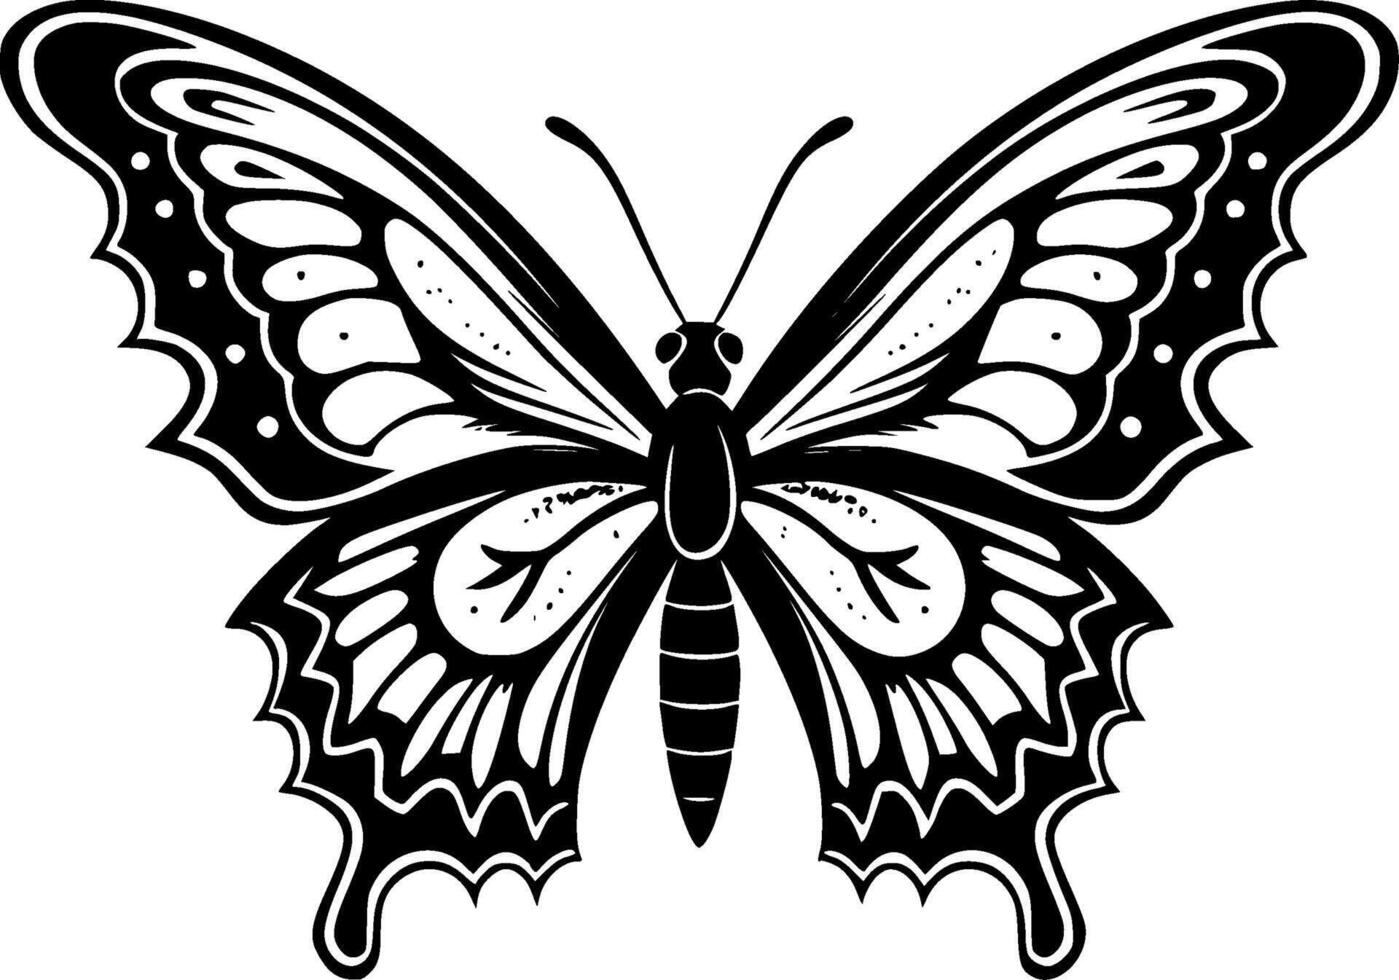 fjäril, svart och vit illustration vektor